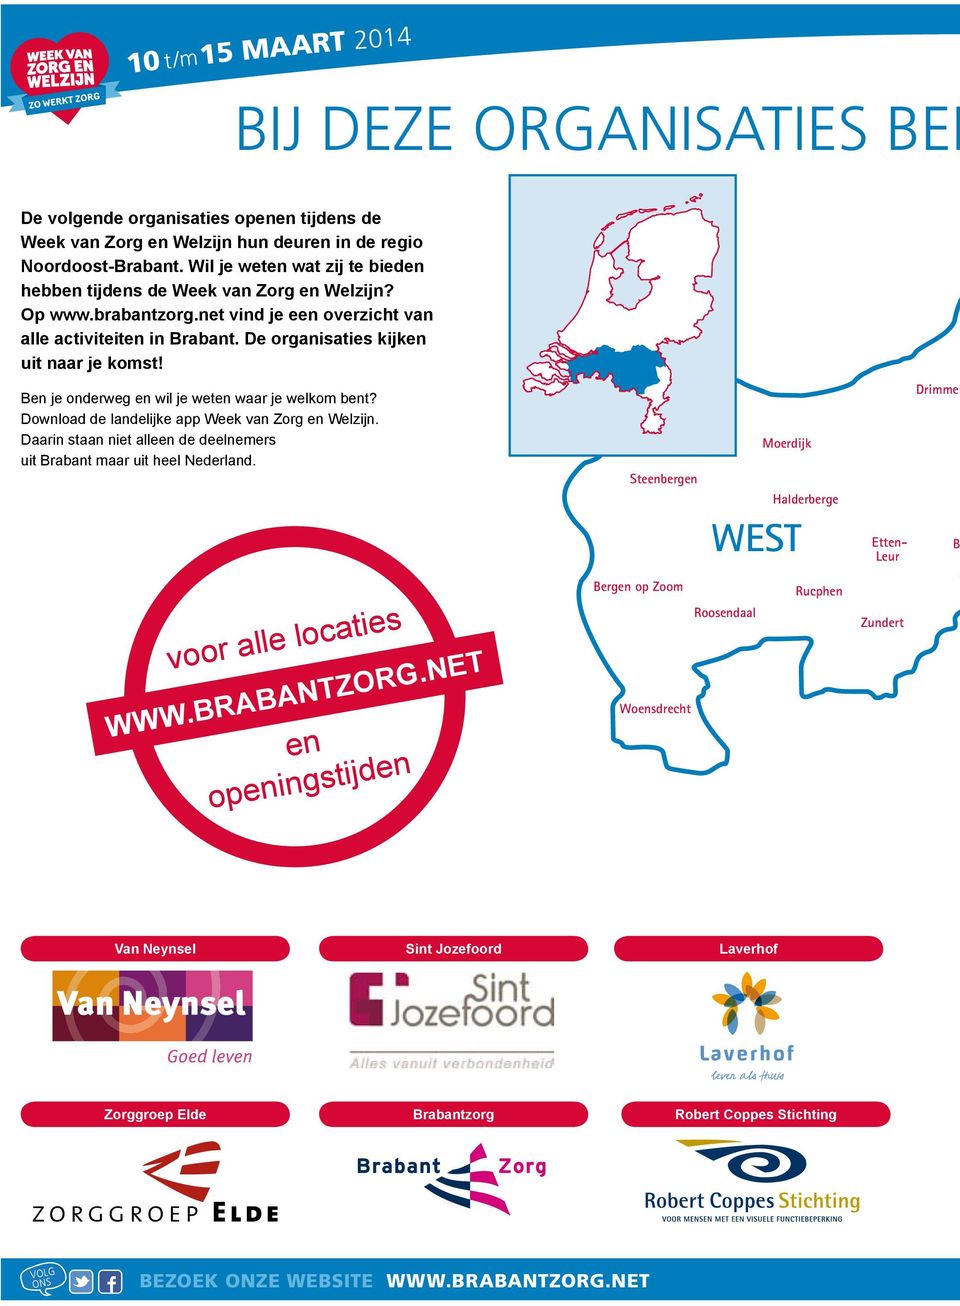 Ben je onderweg en wil je weten waar je welkom bent? Download de landelijke app Week van Zorg en Welzijn. Daarin staan niet alleen de deelnemers uit Brabant maar uit heel Nederland.